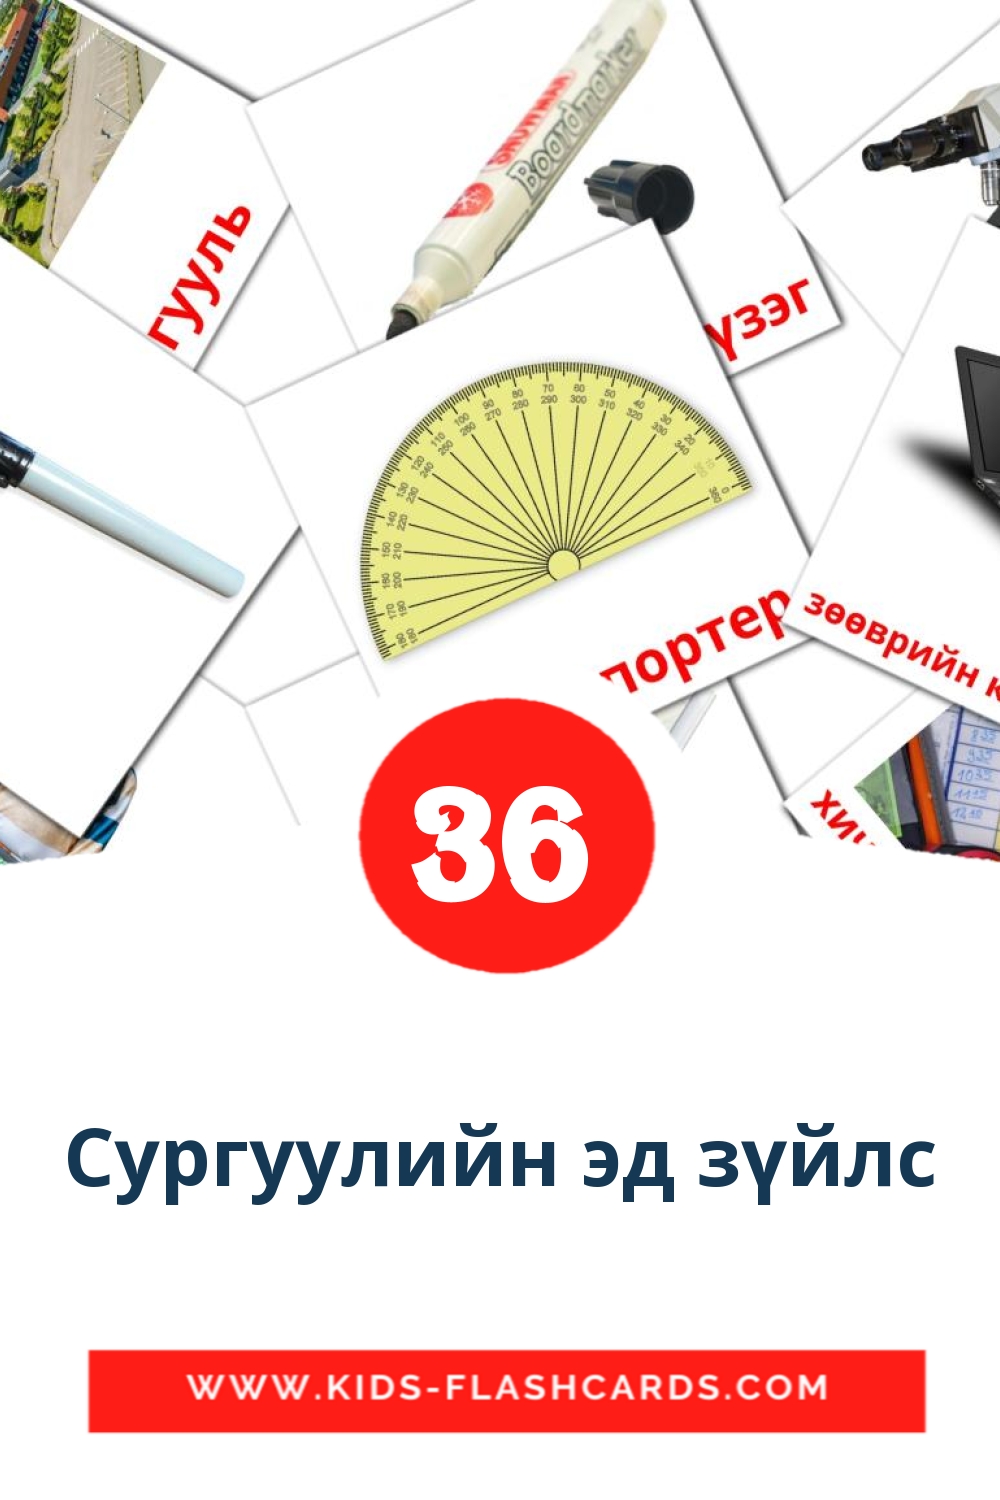 36 tarjetas didacticas de Сургуулийн эд зүйлс para el jardín de infancia en mongol